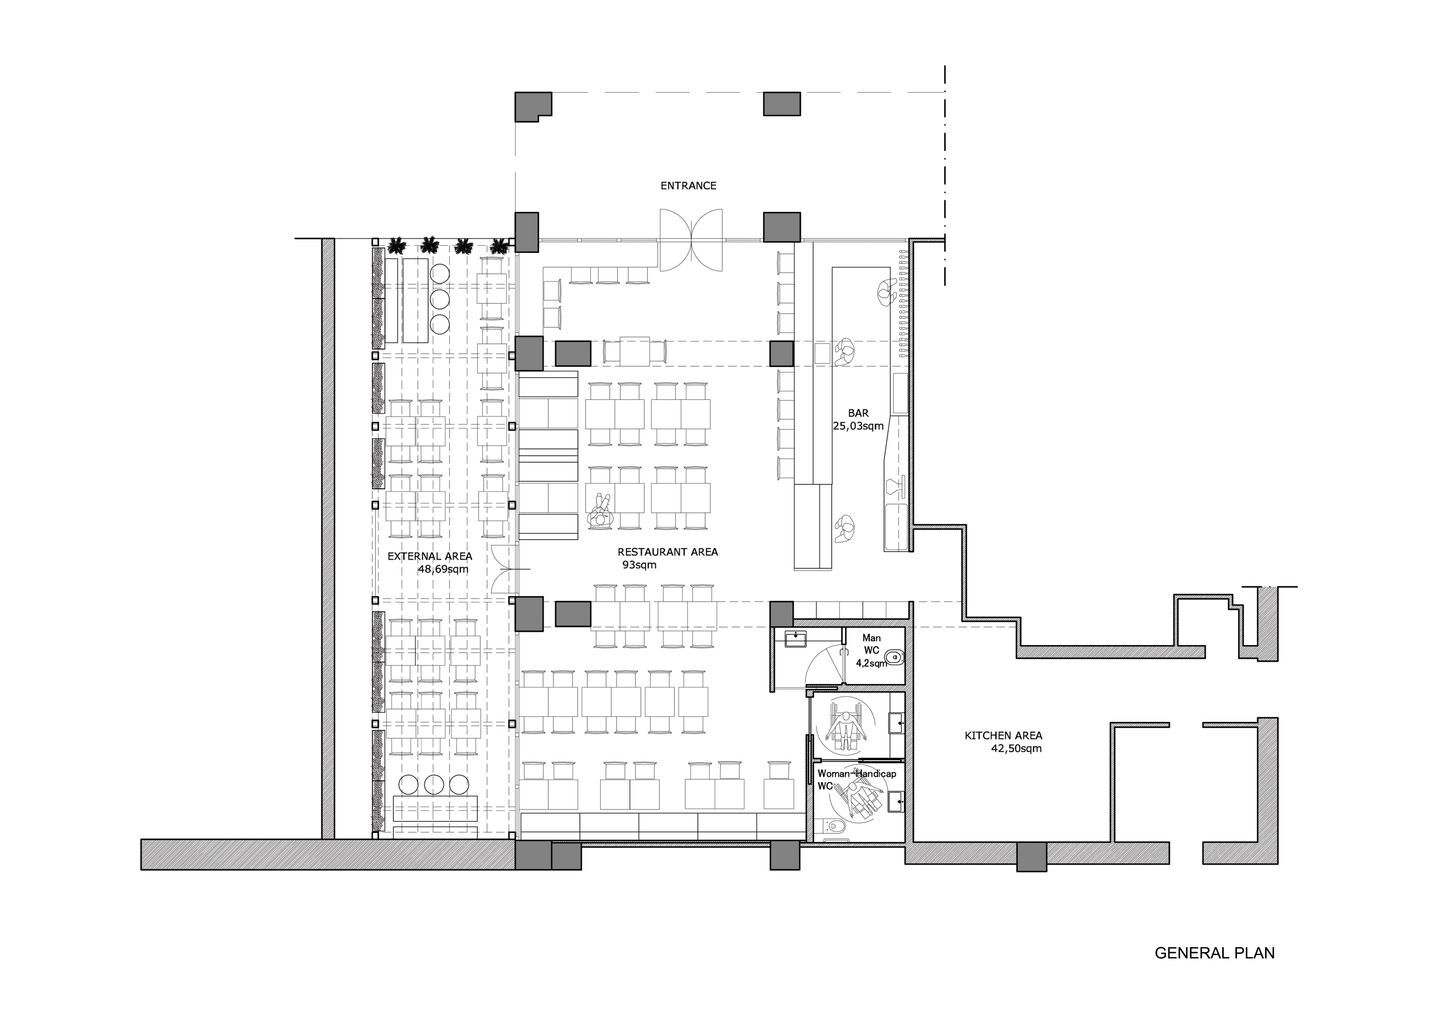 Floor plan of restaurant design